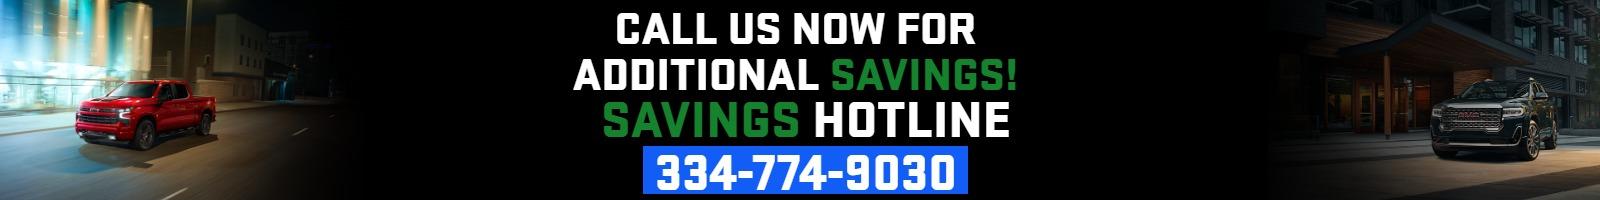 Call us now for additional savings!
Savings Hotline 334-774-9030